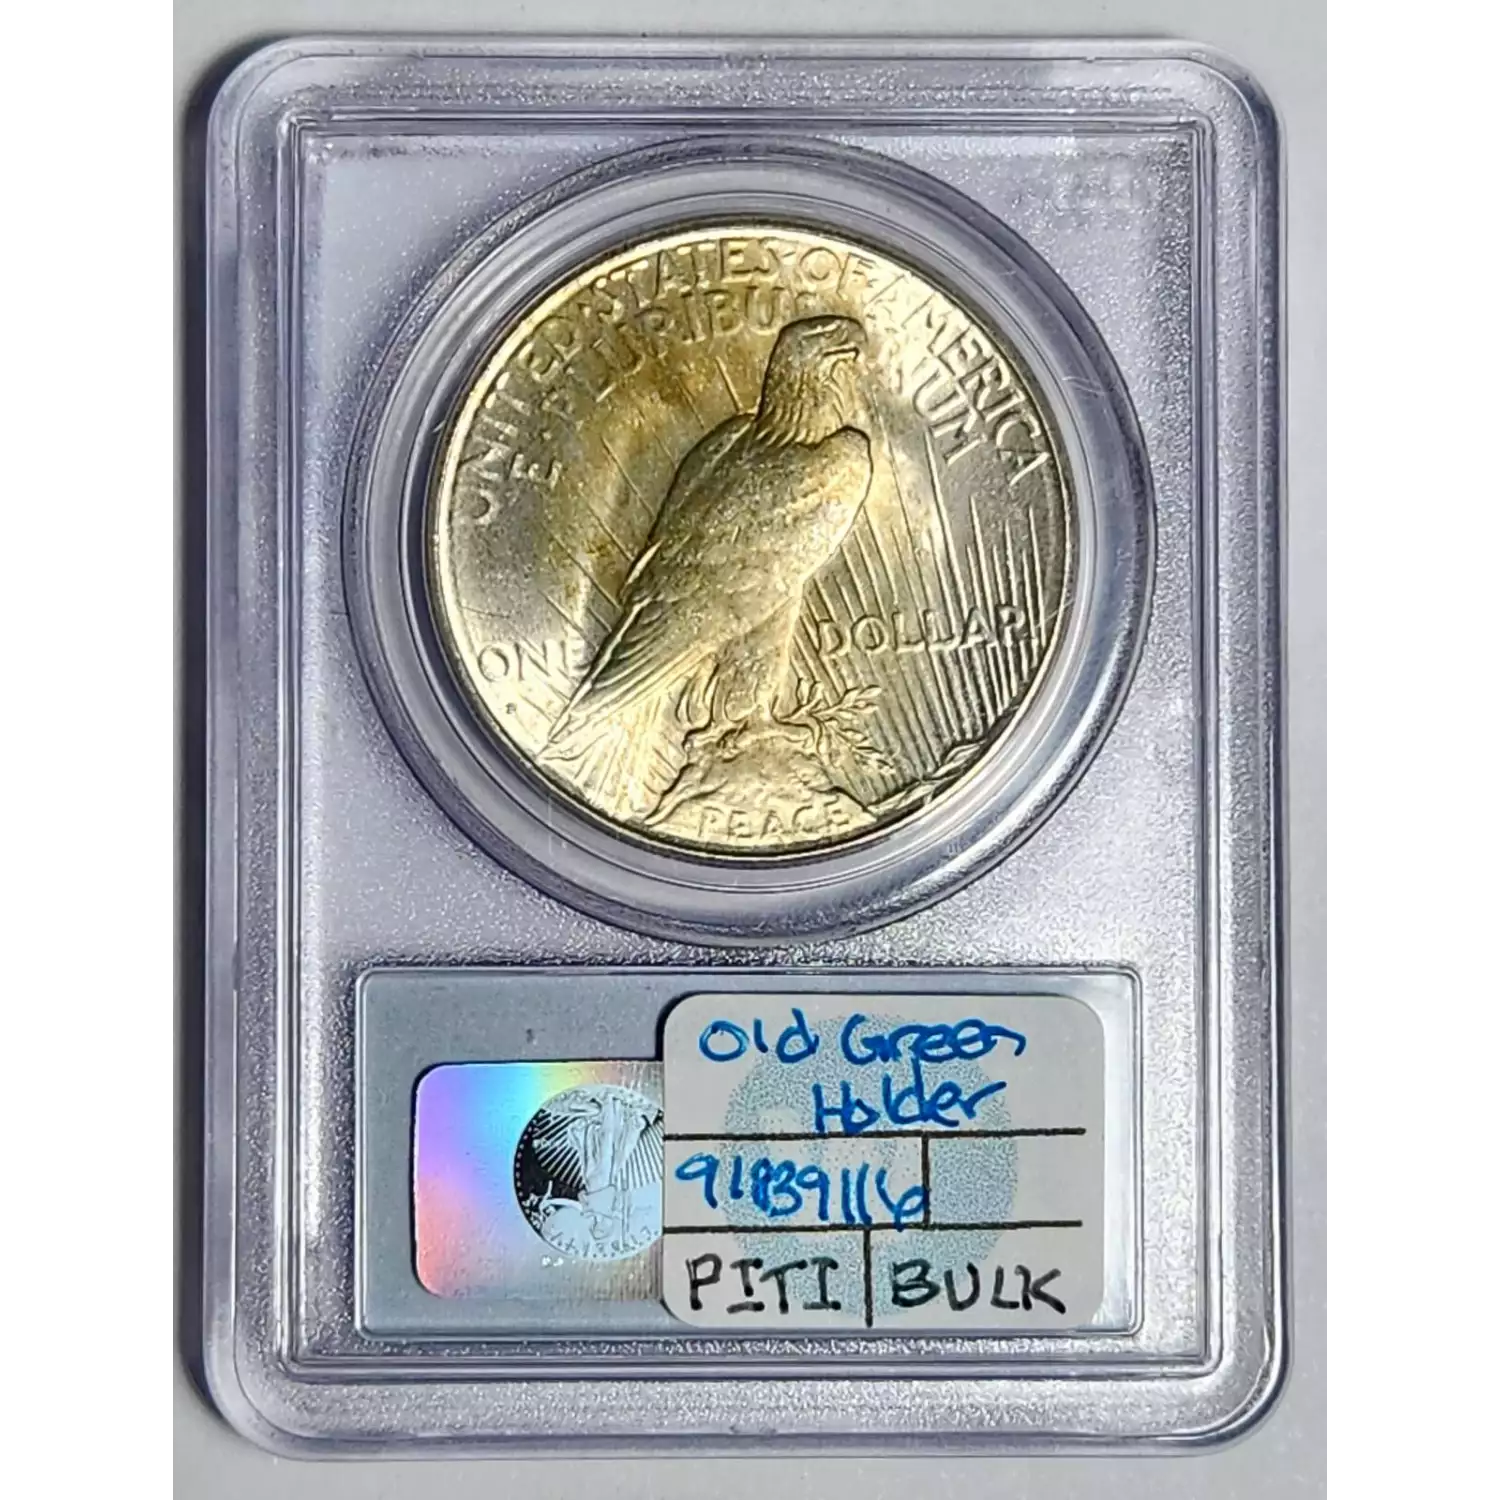 1928-S $1 (2)